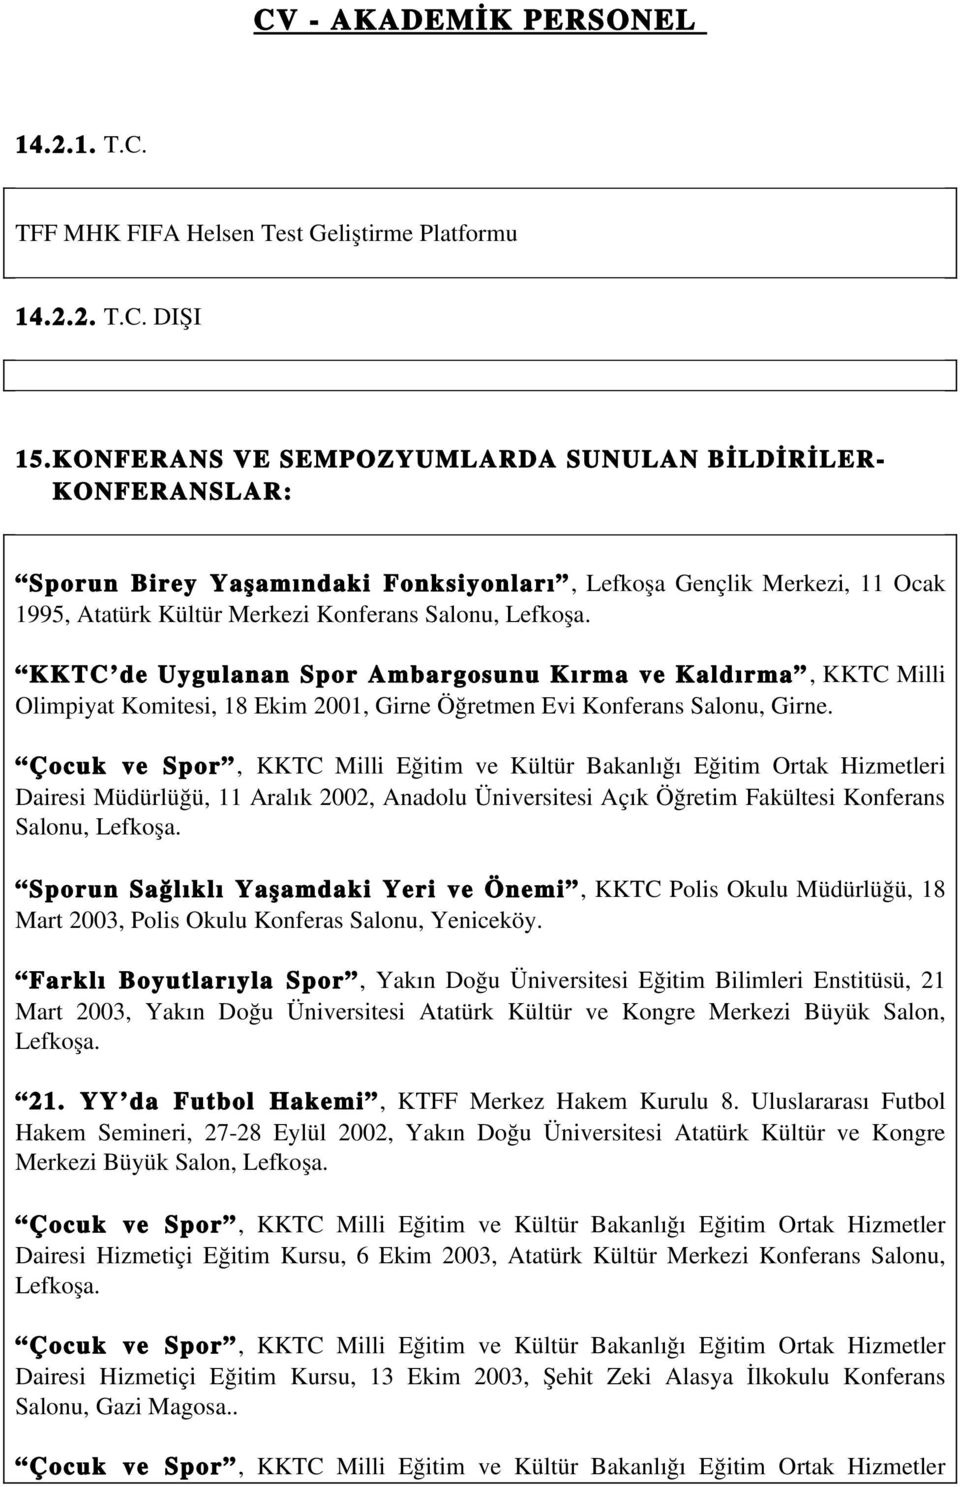 KKTC de Uygulanan Spor Ambargosunu Kırma ve Kaldırma, KKTC Milli Olimpiyat Komitesi, 18 Ekim 2001, Girne Öğretmen Evi Konferans Salonu, Girne.